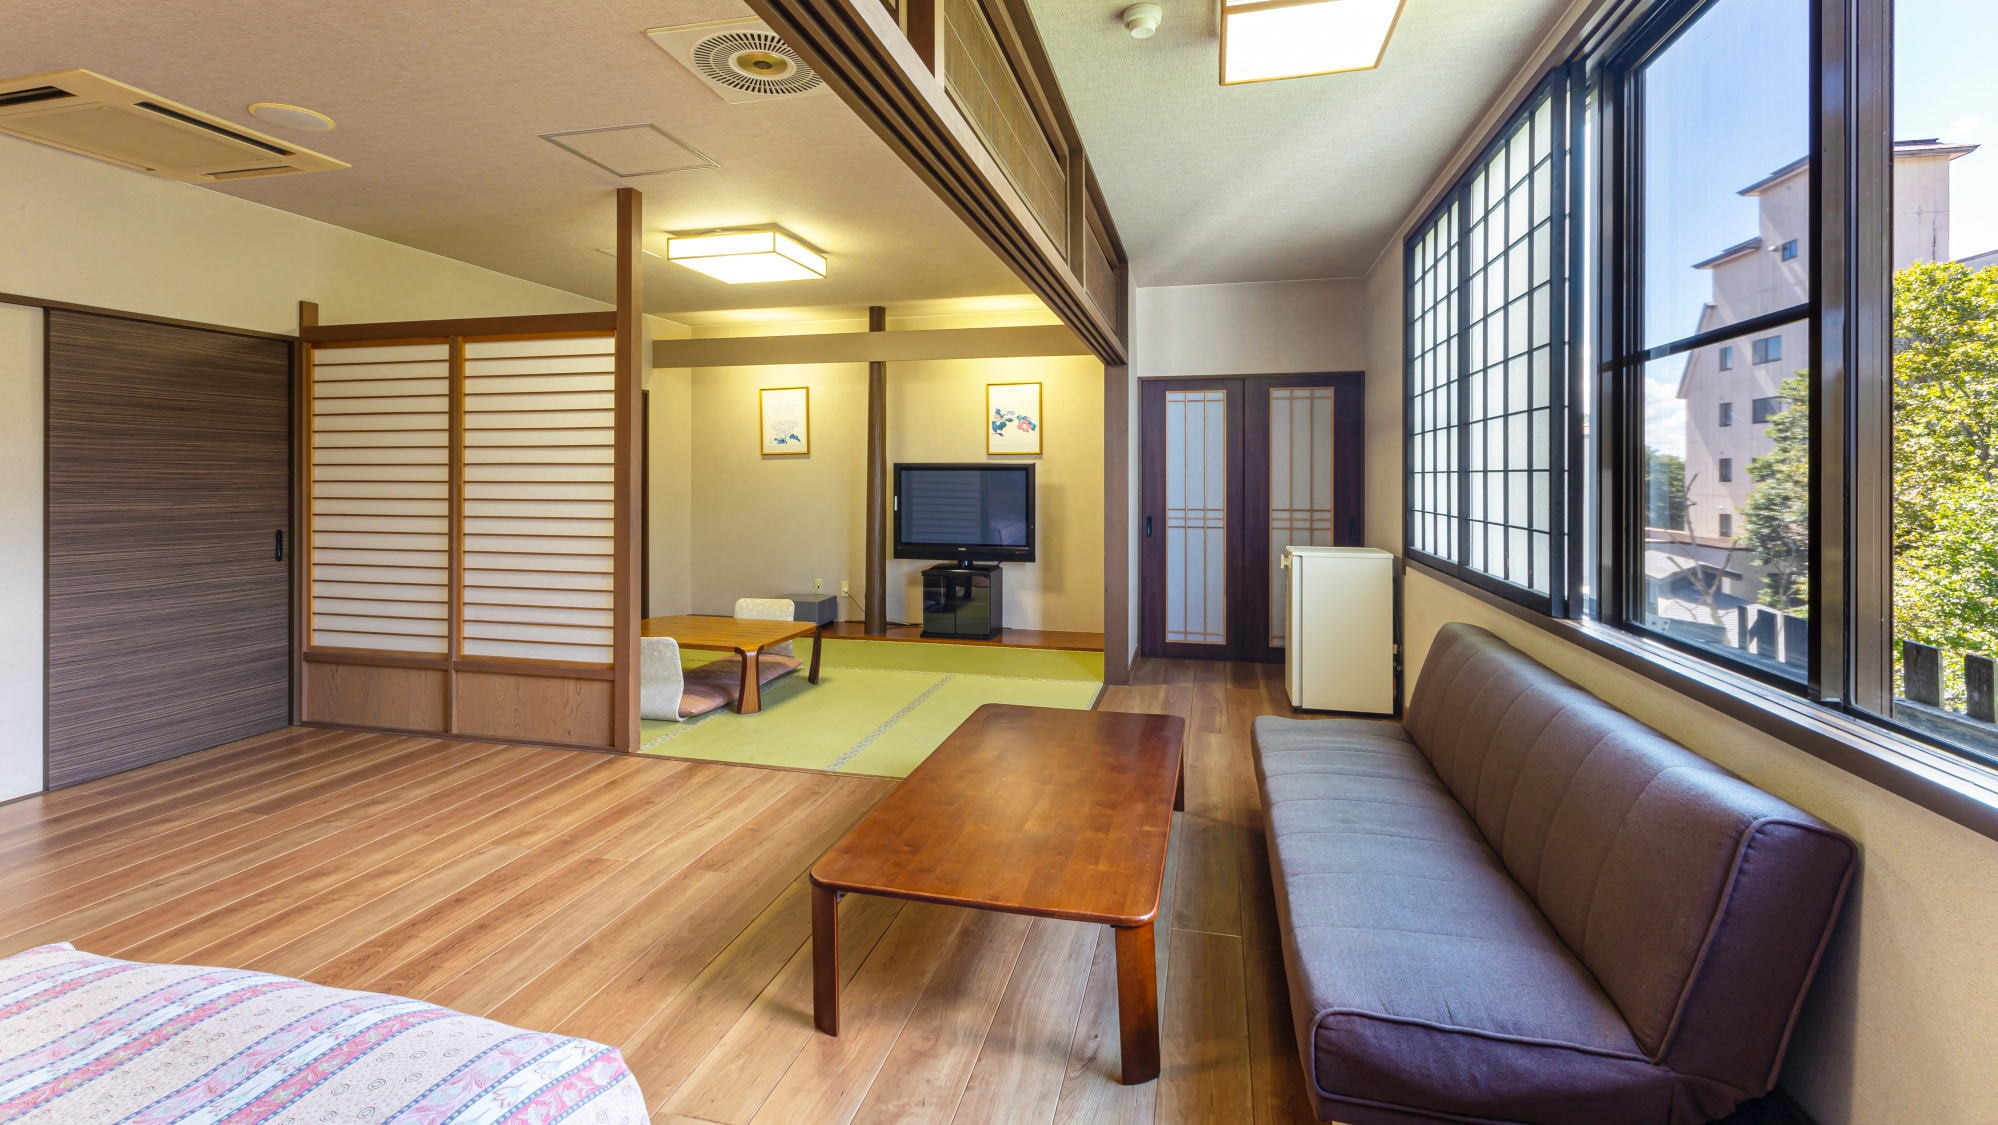 【東館日西合璧房】 這是兩張單人床的房間和8張榻榻米的日式房間。